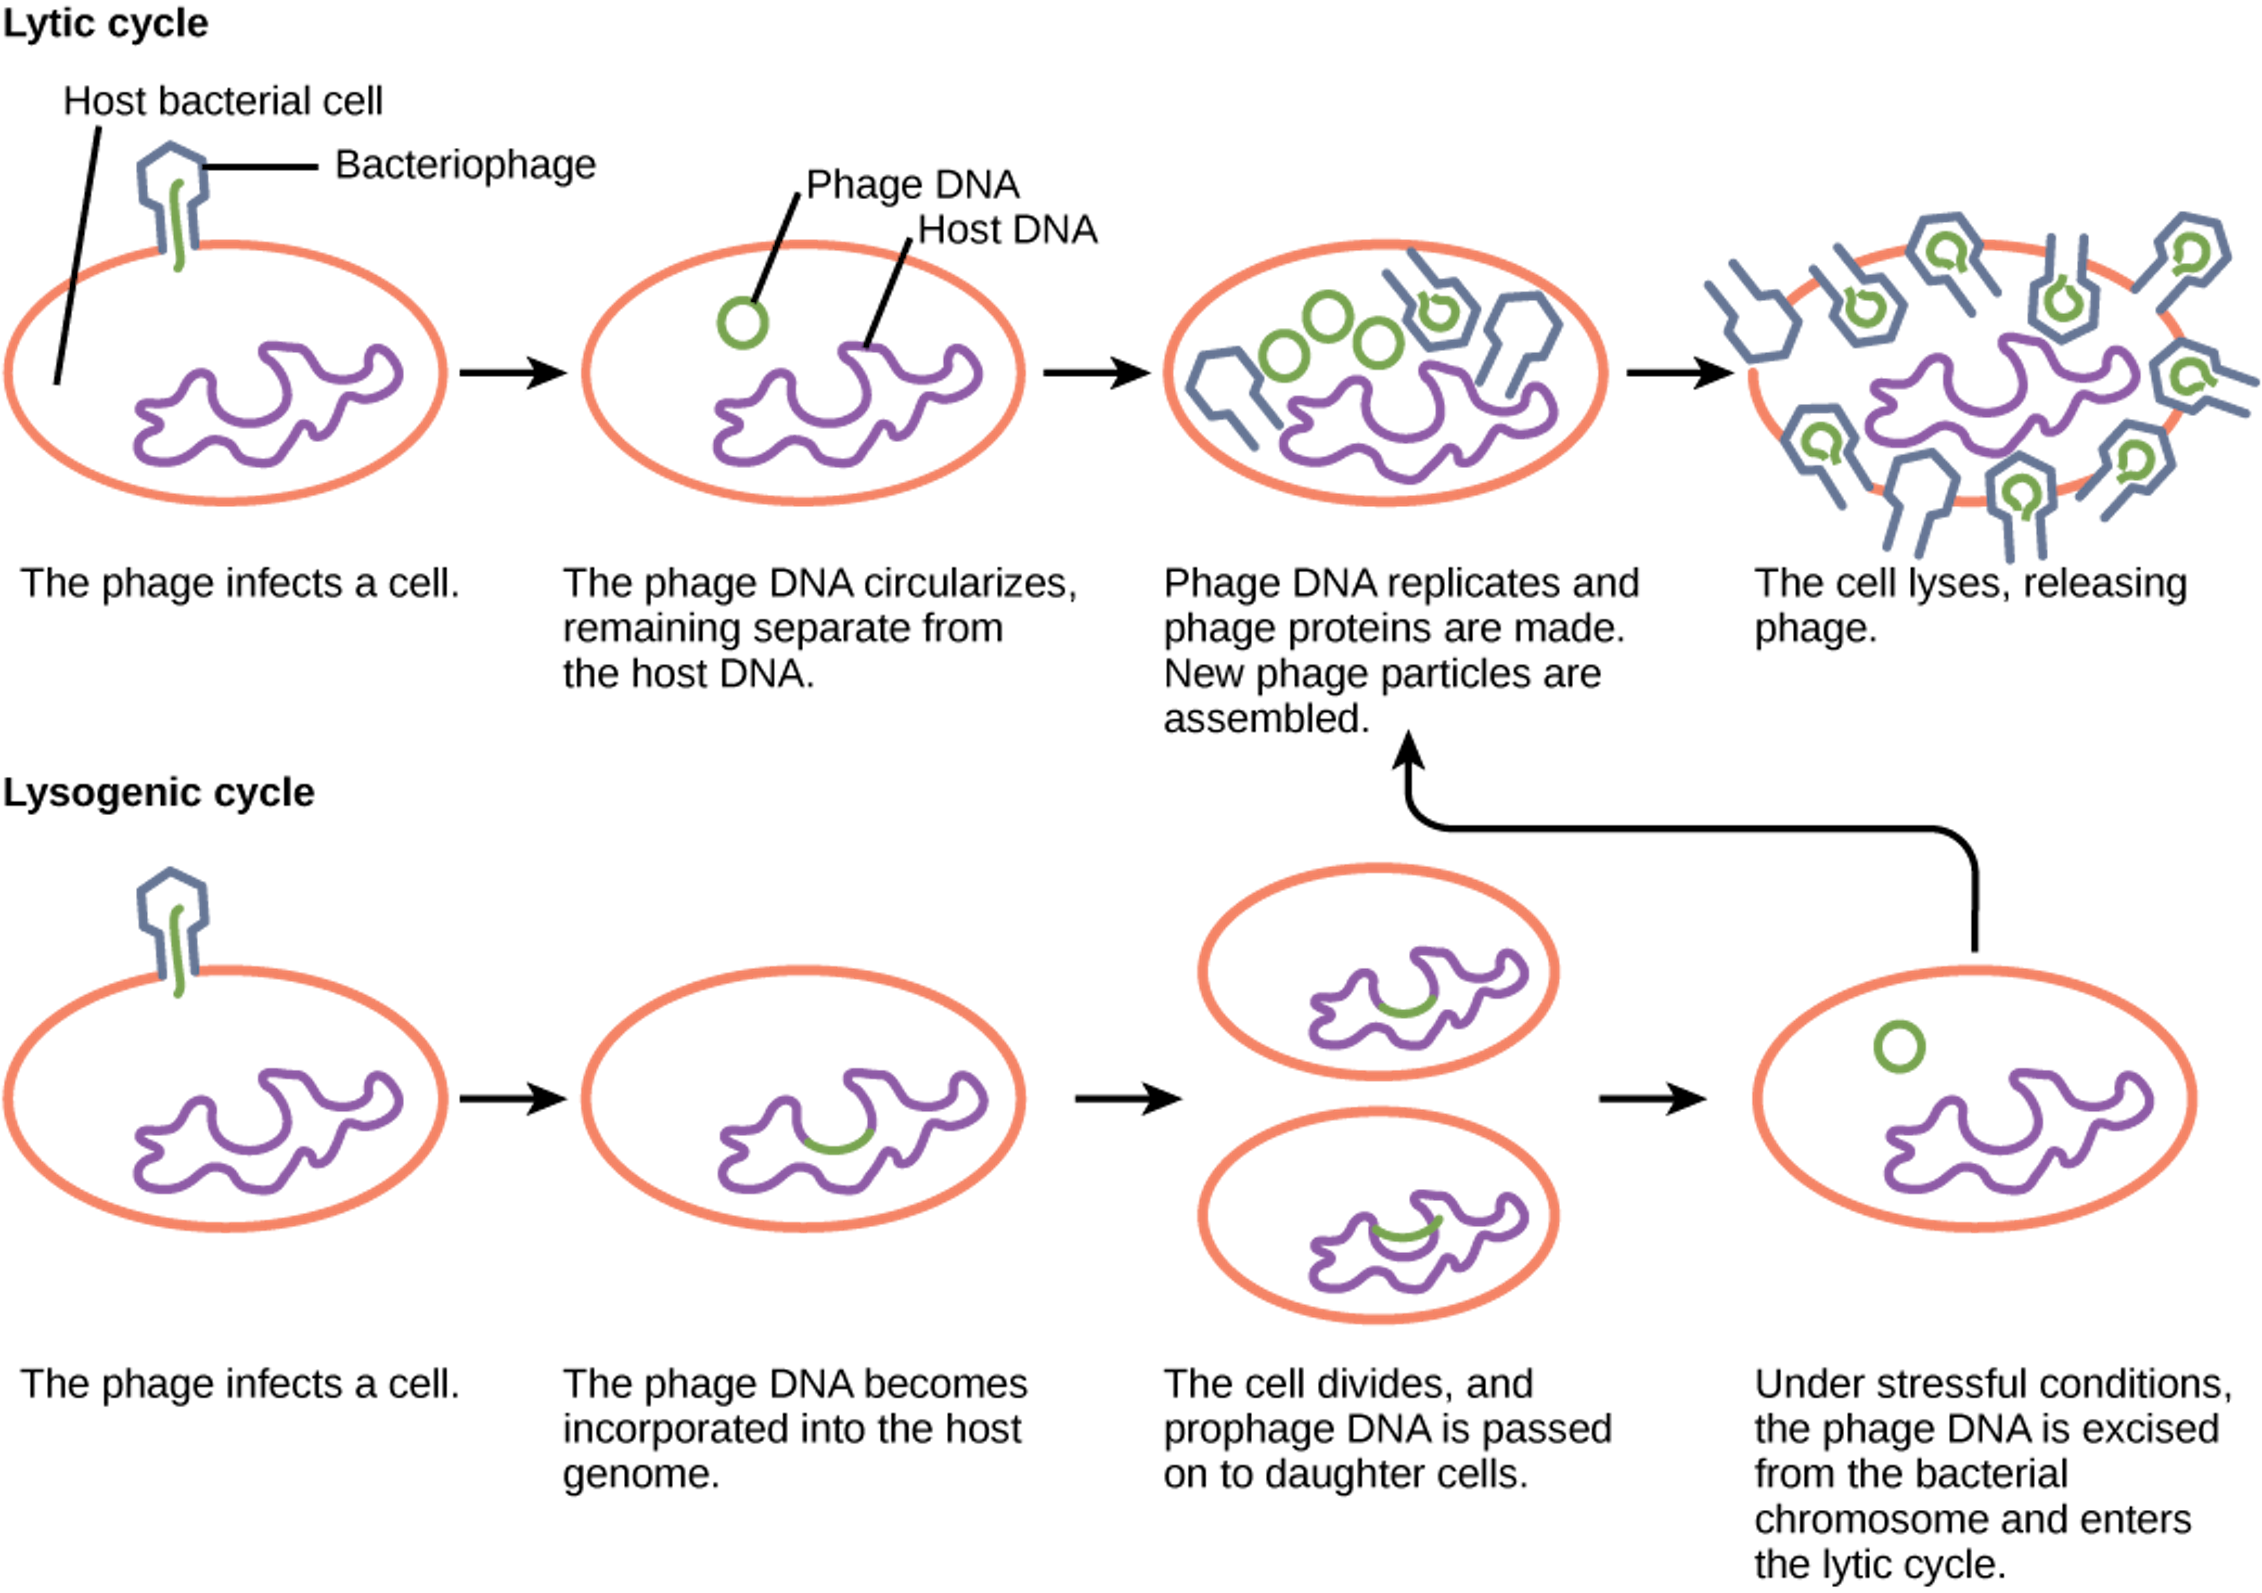 Passive daughter. Lytic and lysogenic. Литический и лизогенный цикл. Литический цикл бактериофага. Литический и лизогенный цикл вирусов.